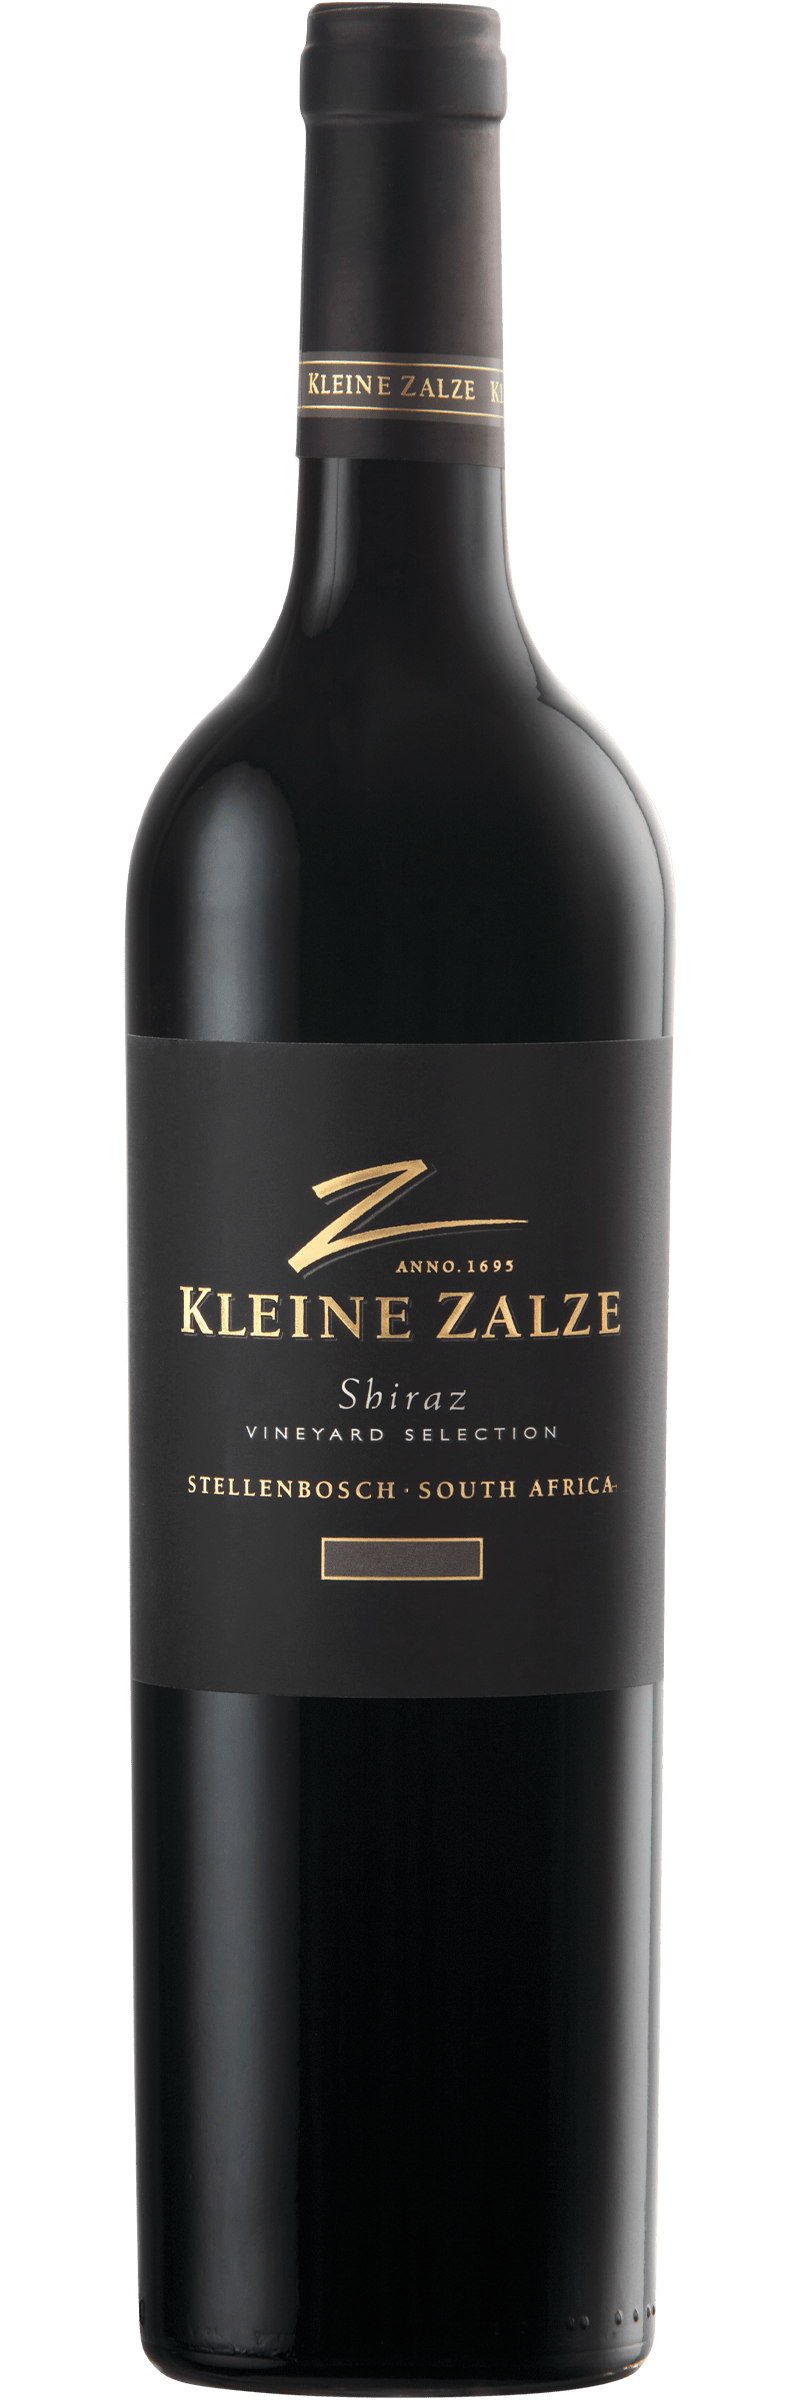 Kleine Zalze Vineyard Selection Shiraz 2017 75cl